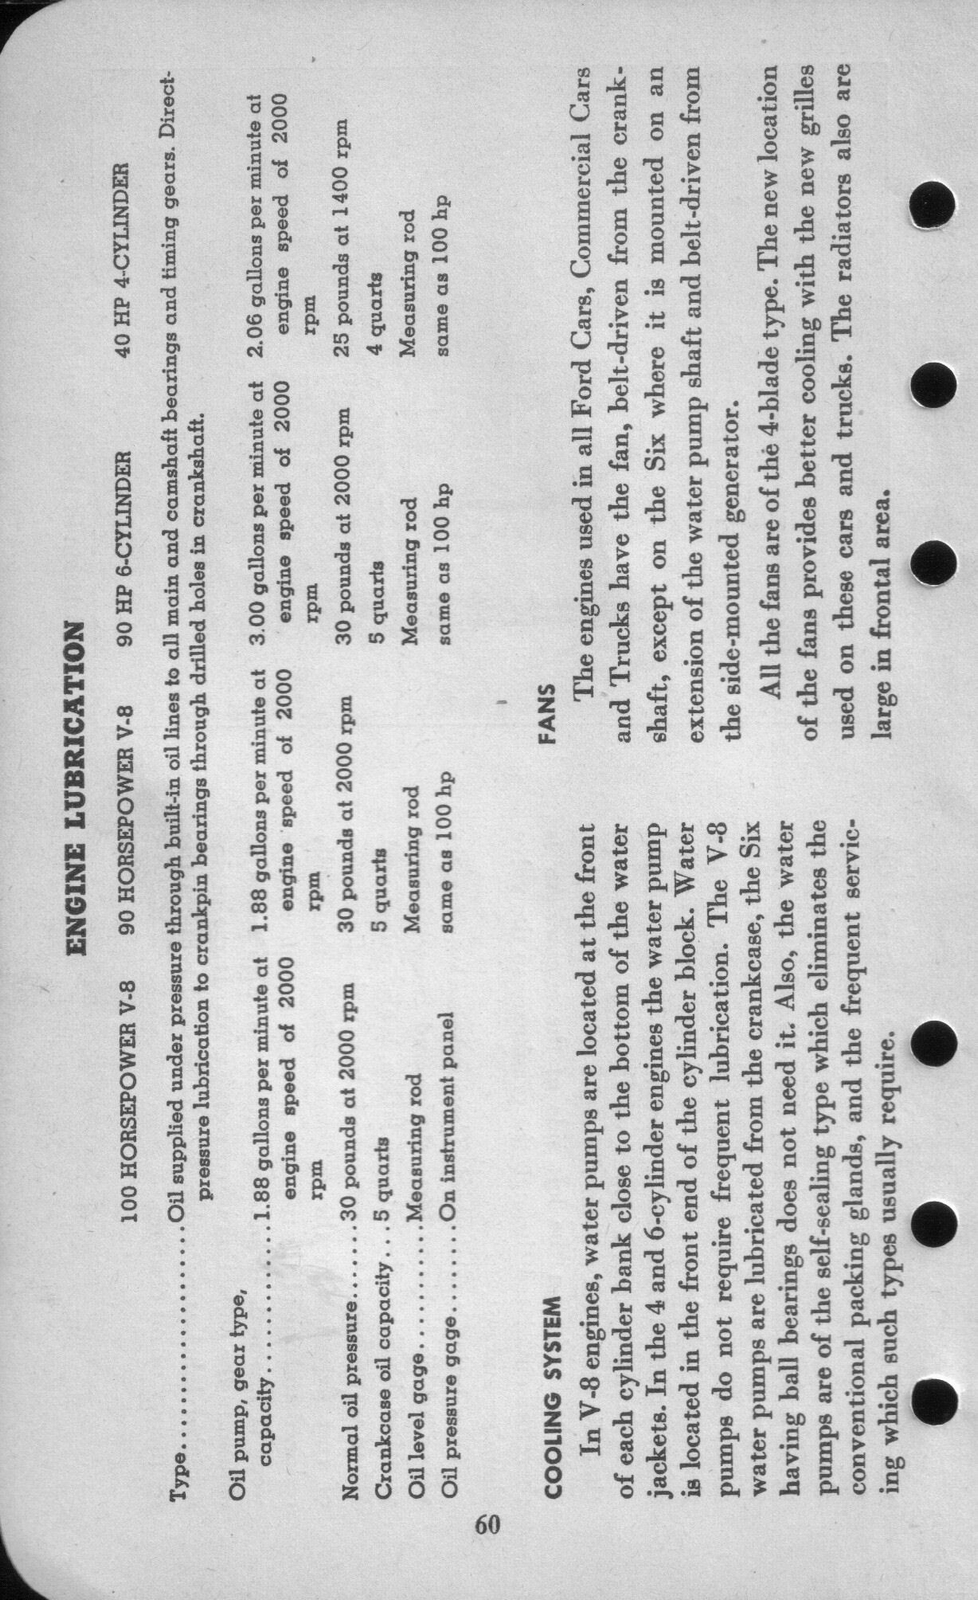 n_1942 Ford Salesmans Reference Manual-060.jpg